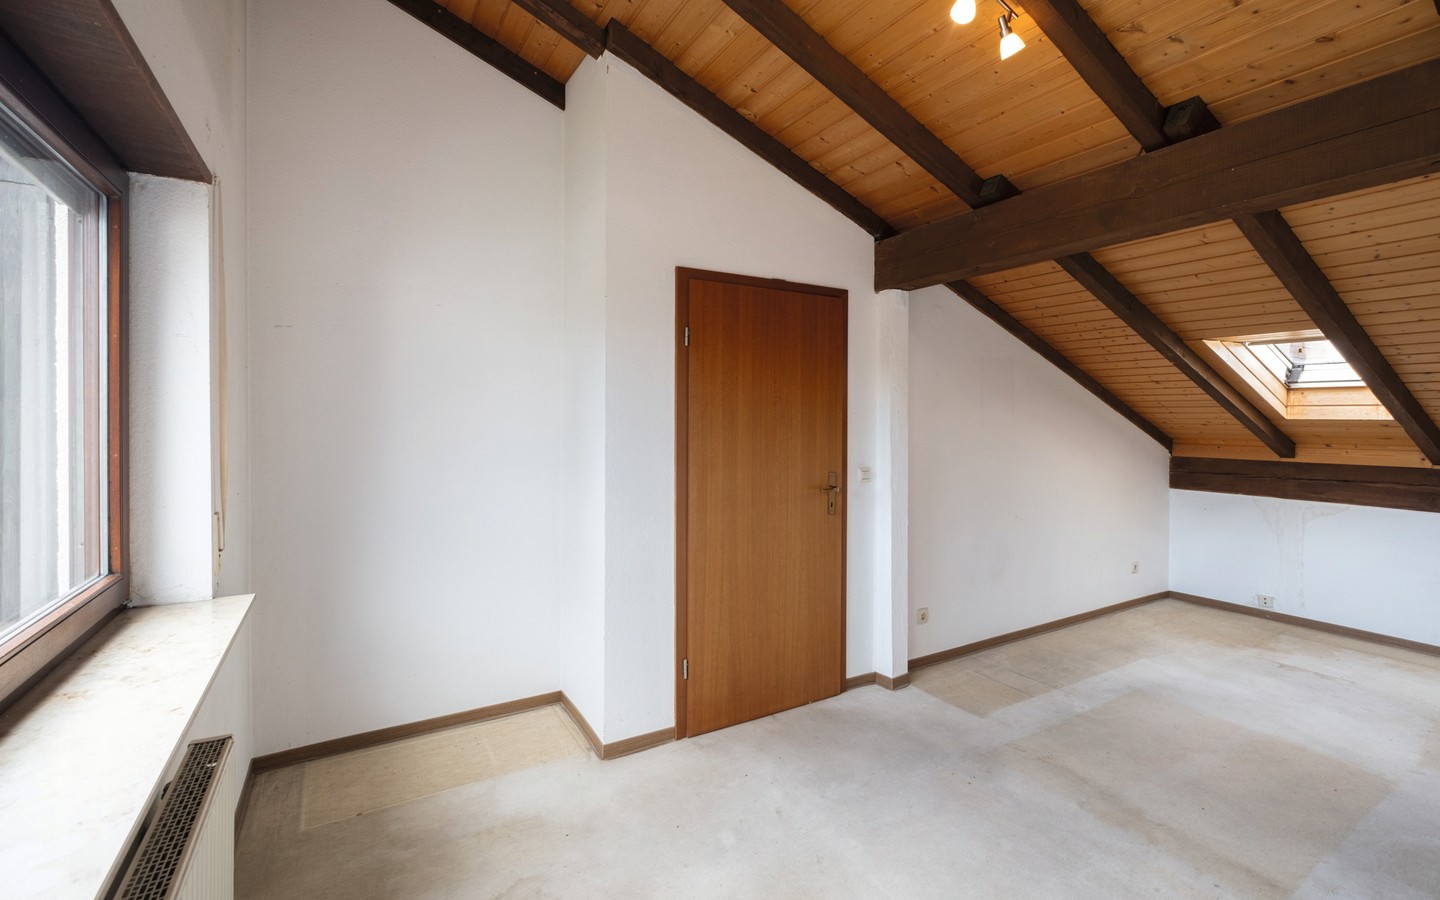 Zimmer 4 - Ihr neues Familiendomizil in Wiesloch: großzügiges RMH mit findiger Architektur und viel Platz